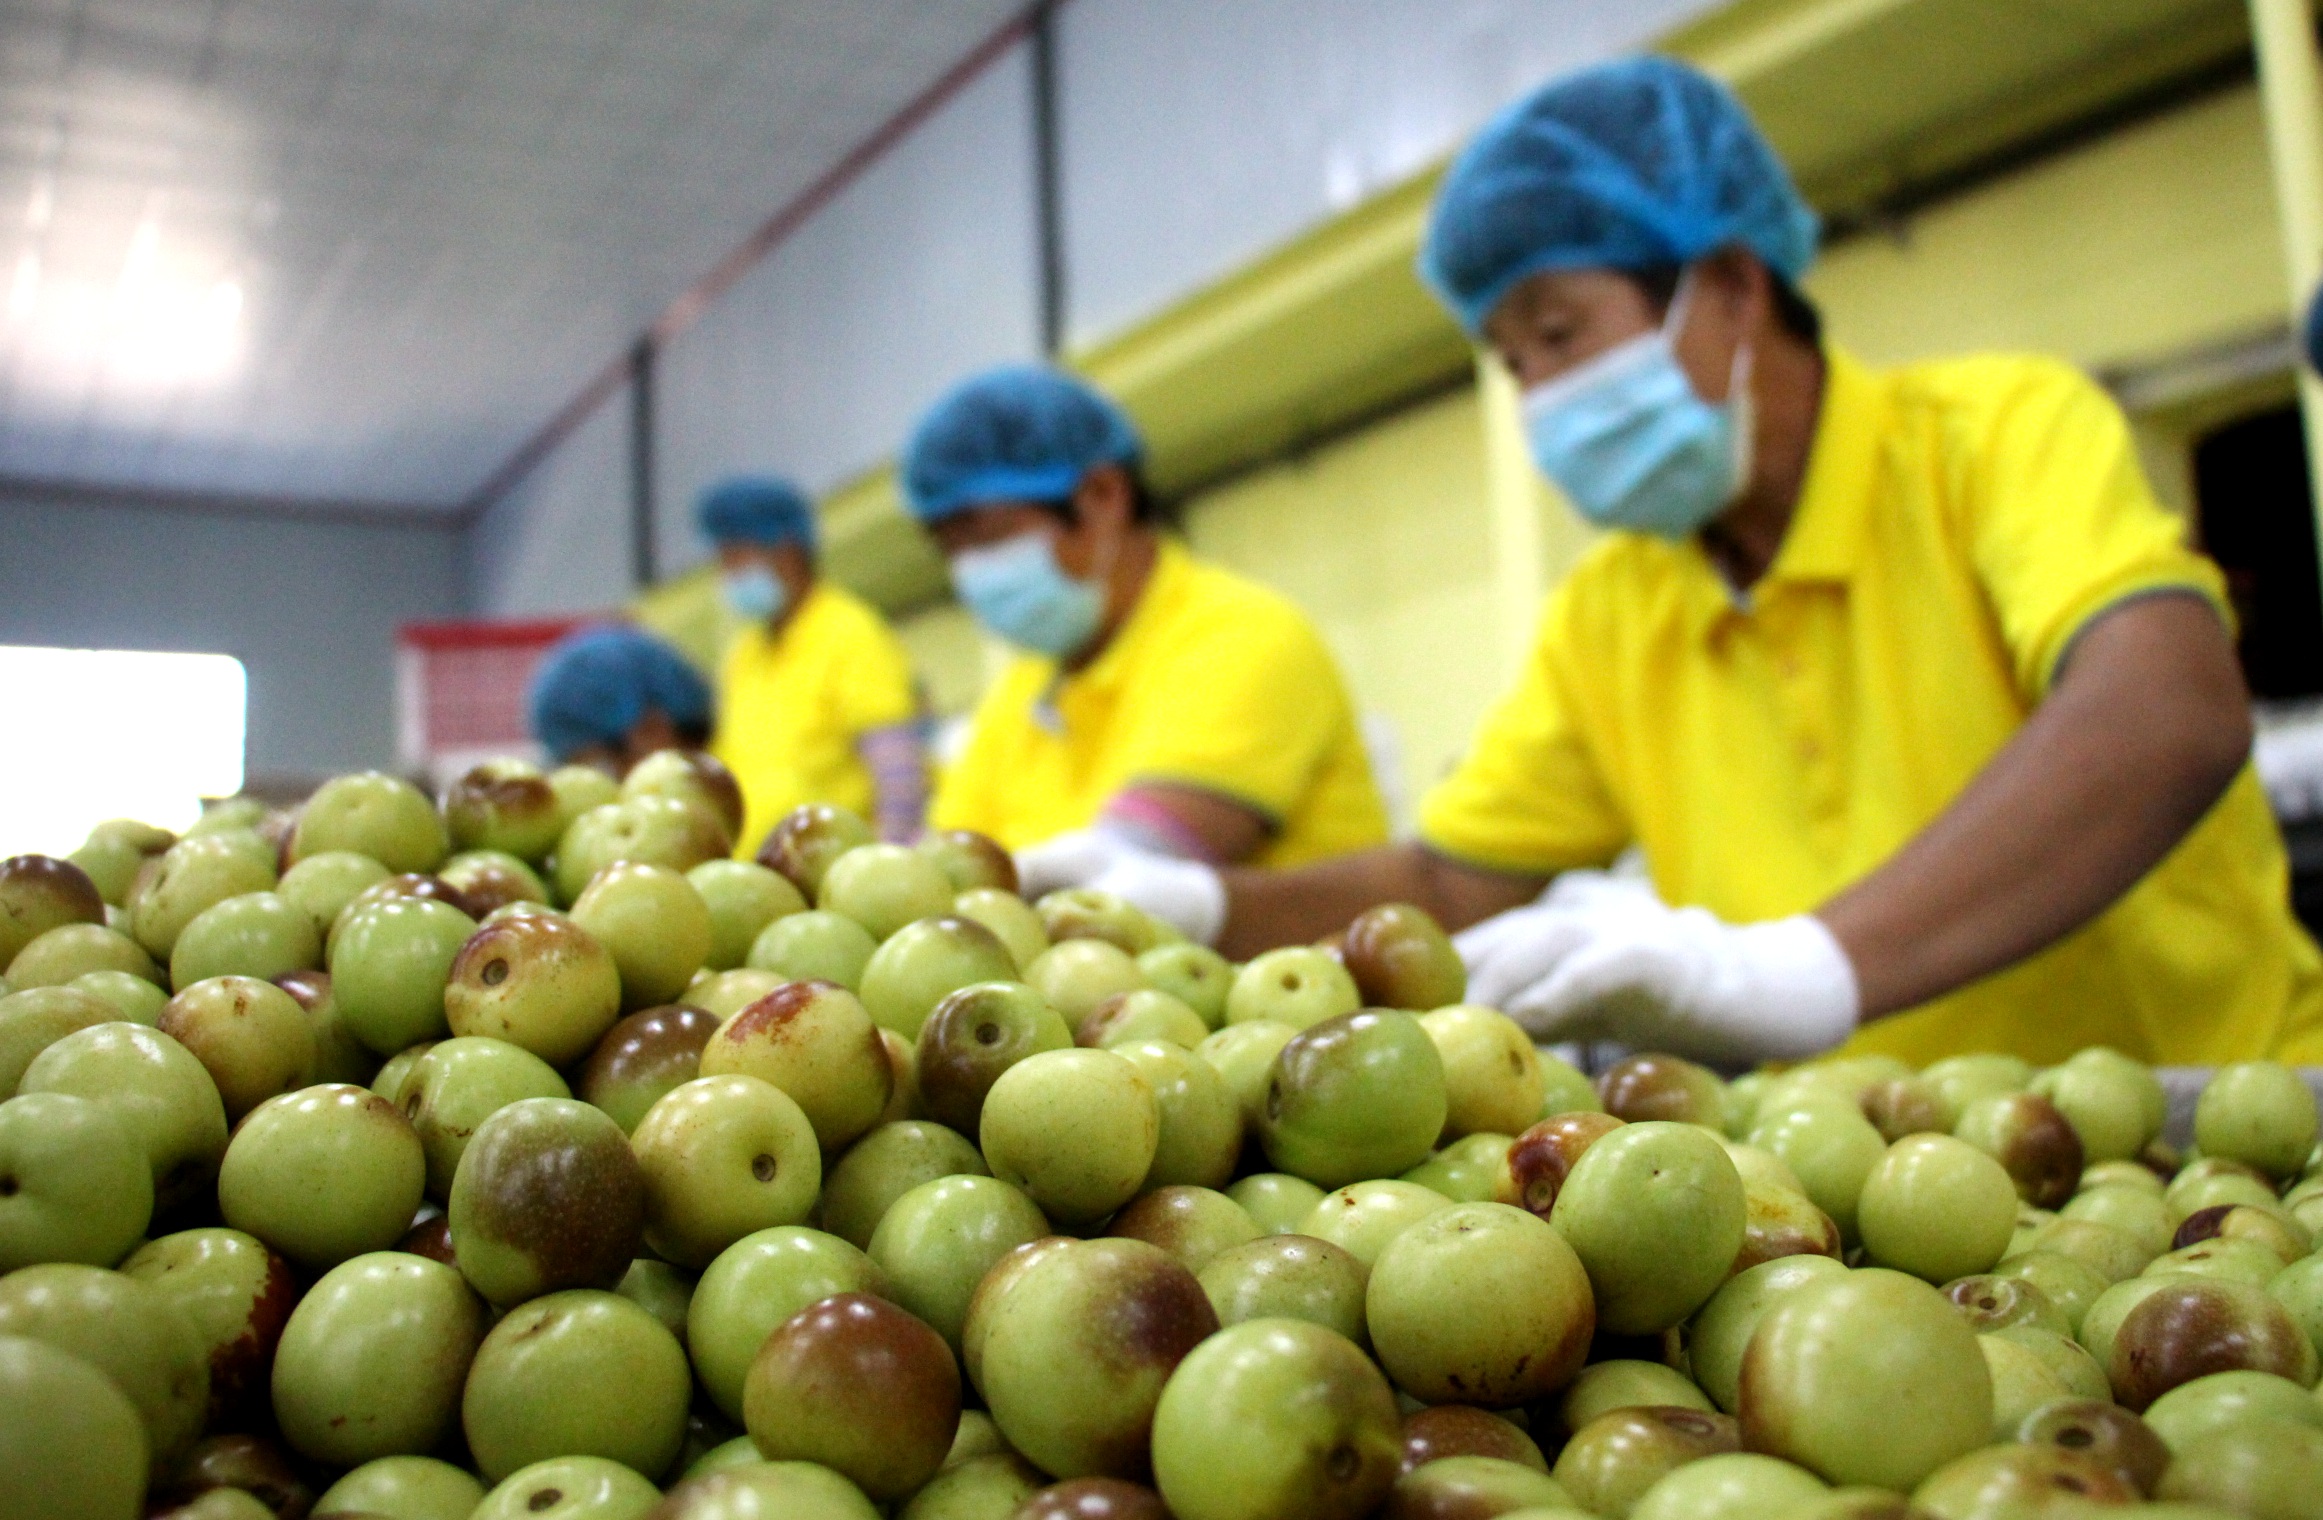 9月18日,山东省滨州市沾化区一家果蔬进出口有限公司工人在分拣冬枣